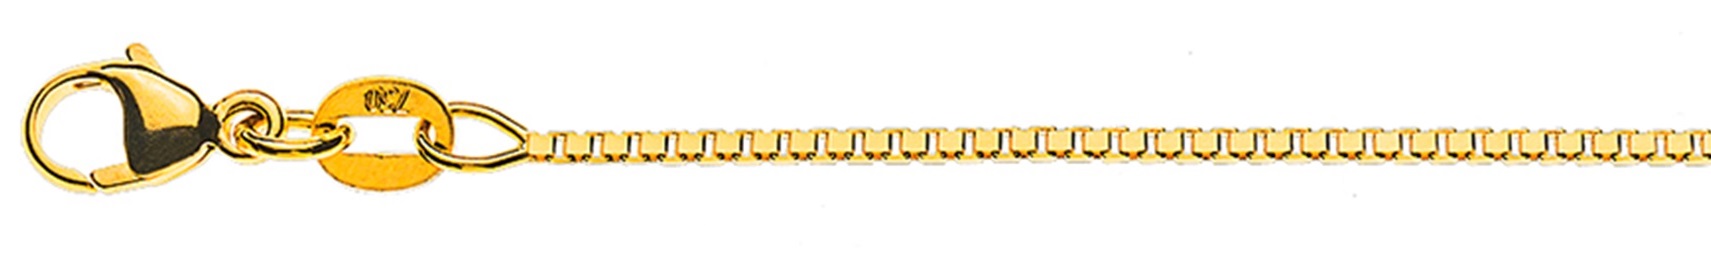 AURONOS Style Halskette Gelbgold 9K Venezianerkette diamantiert 38cm 1.1mm